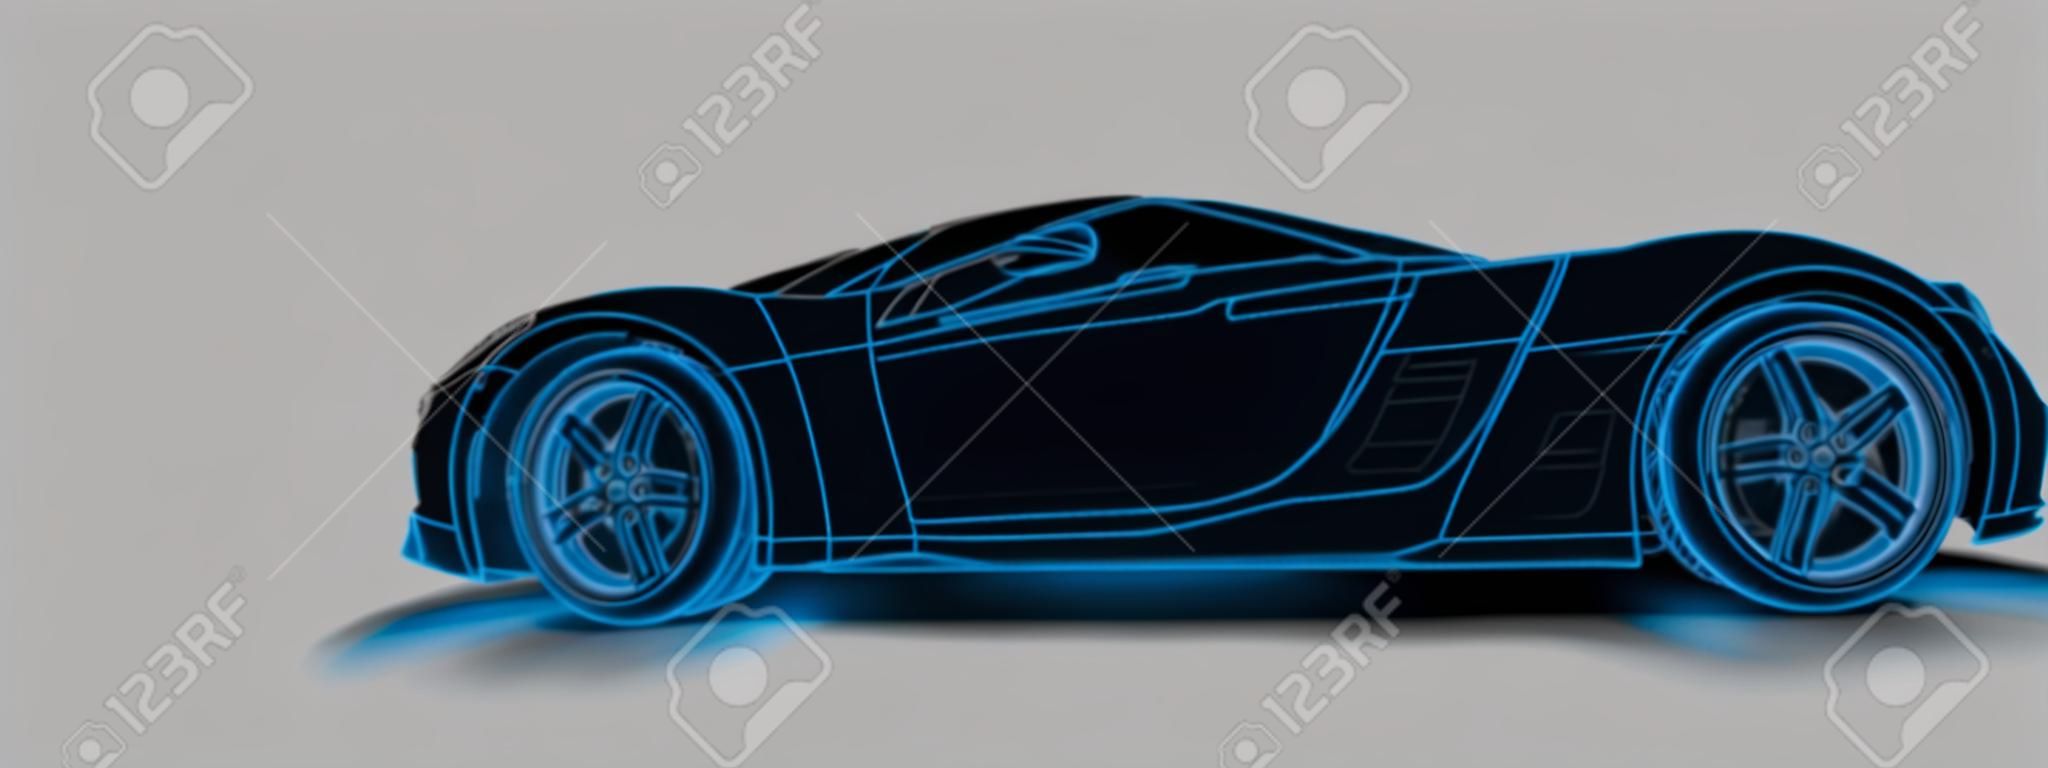 Filaire d'une illustration 3D de voiture de sport générique et sans marque